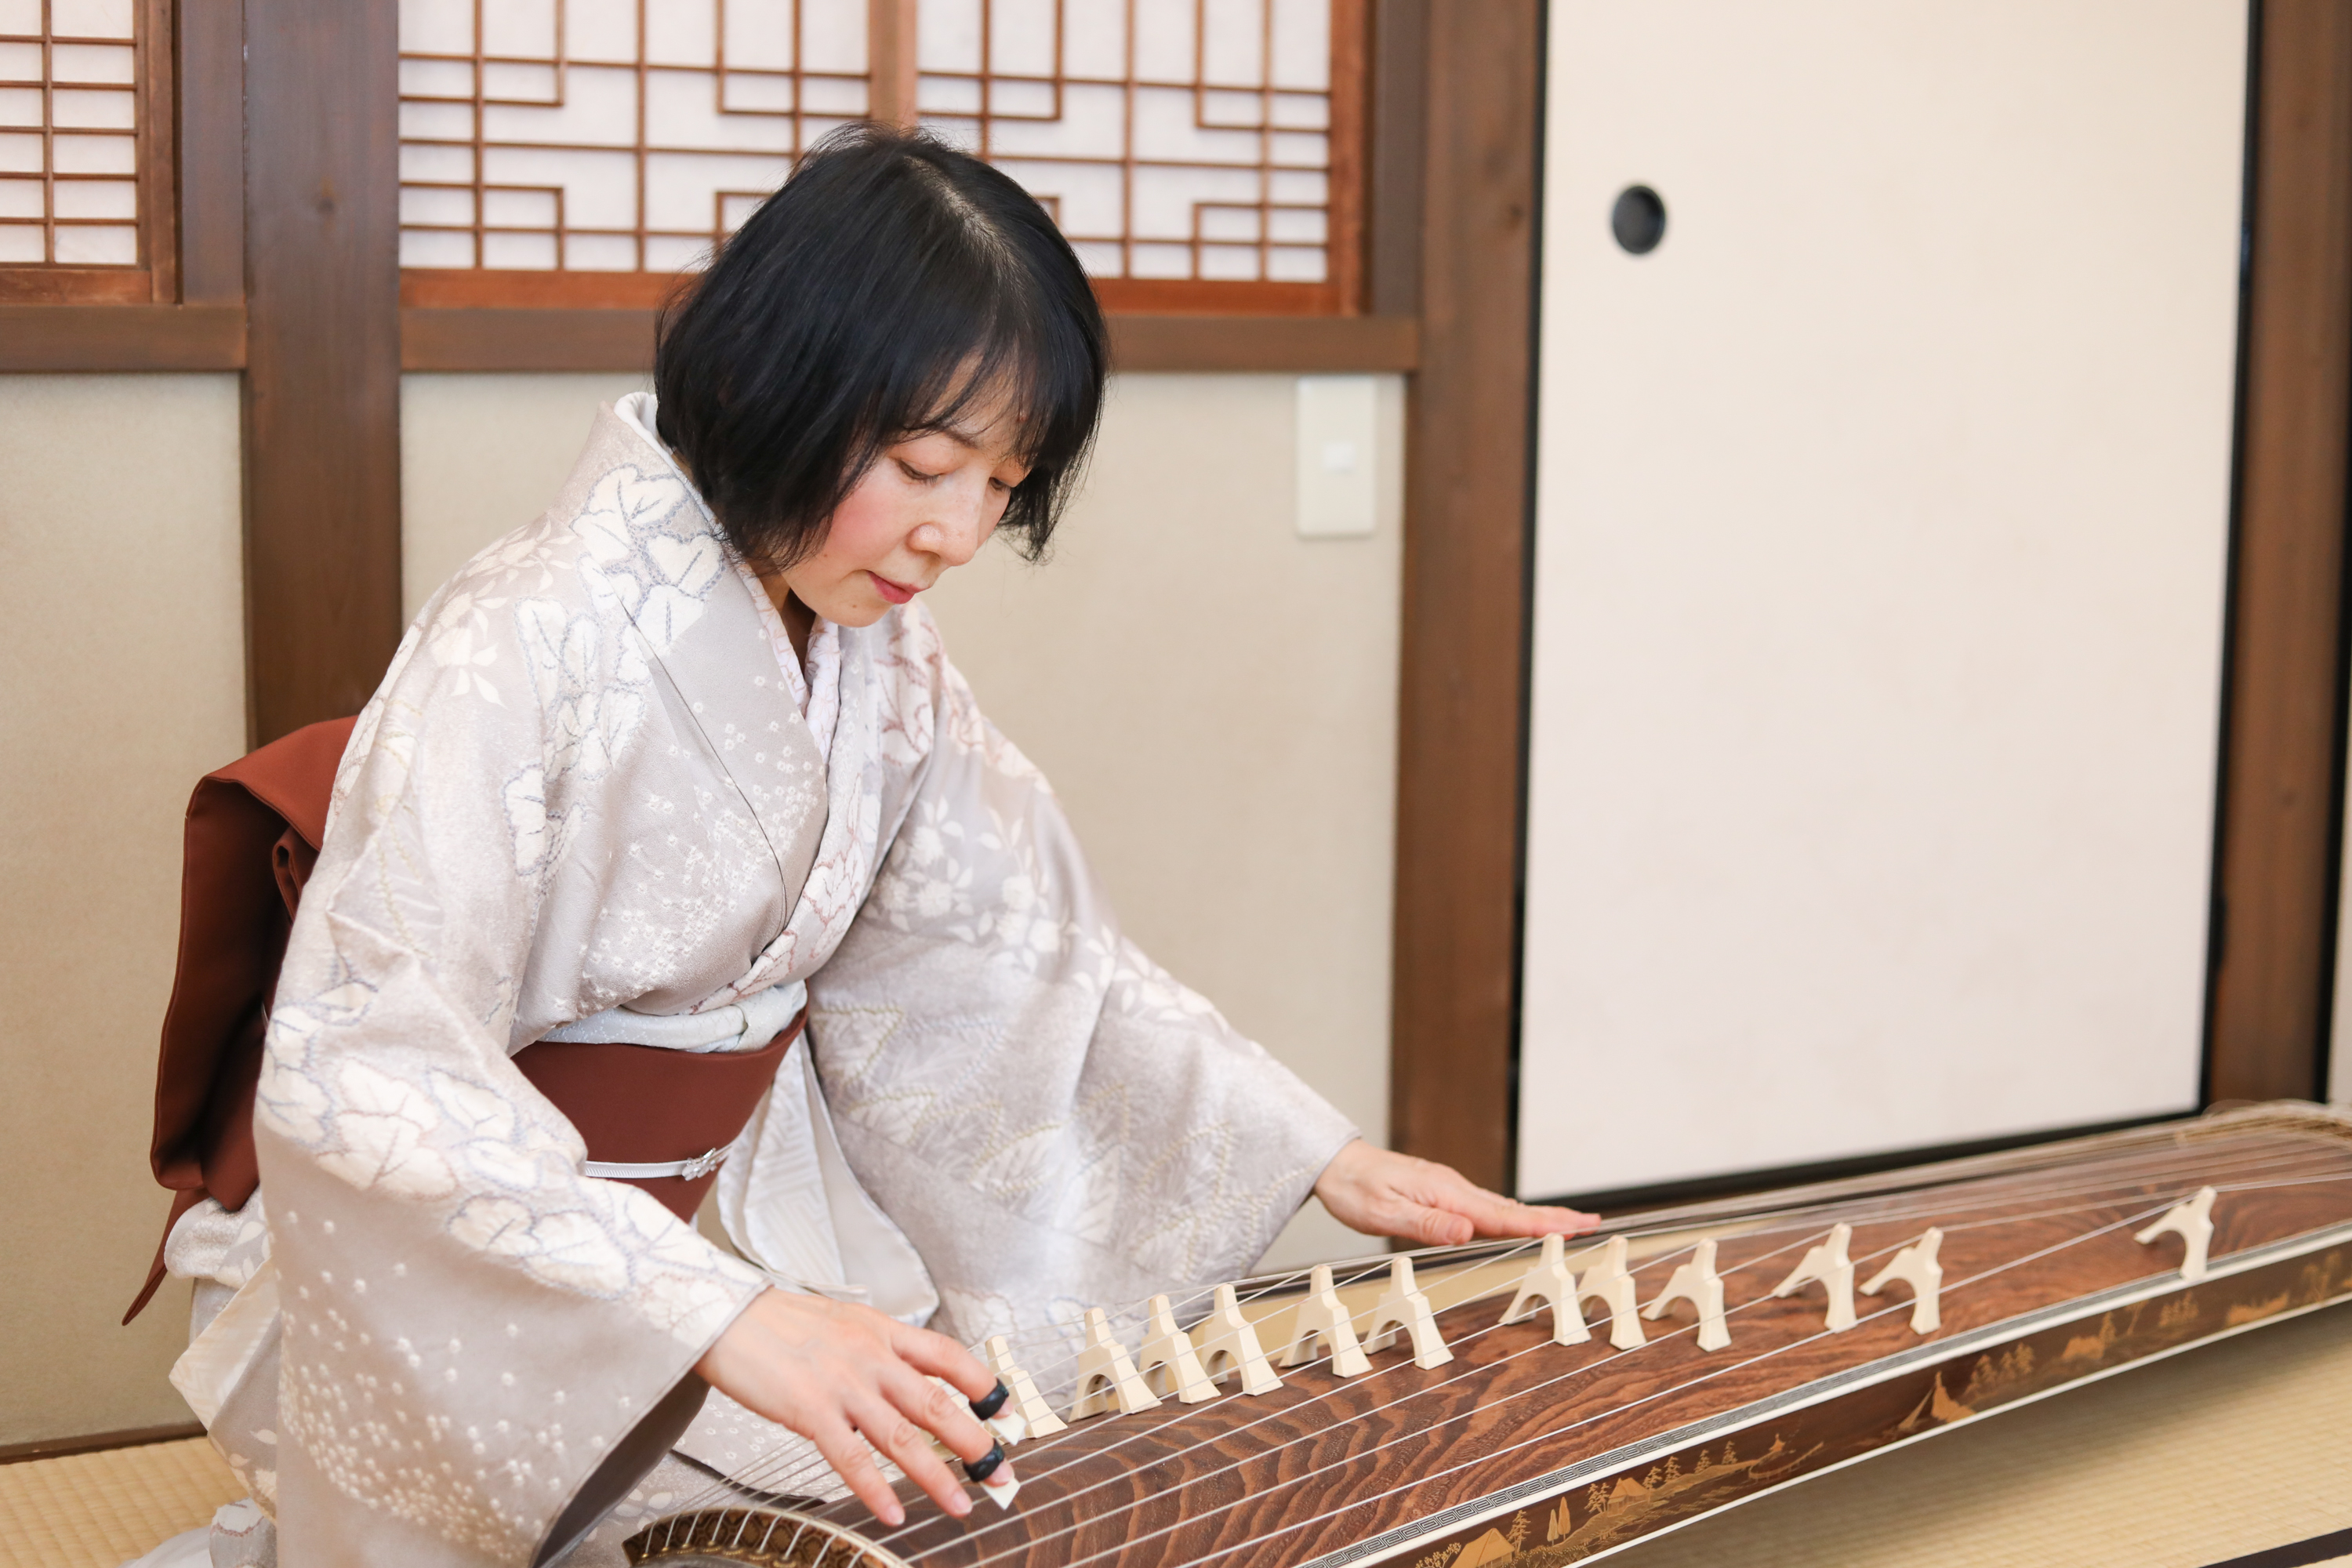 Кото японский музыкальный инструмент. Японский музыкальный инструмент сямисэн. Японская музыка кото. Секо японский музыкальный инструмент. Песня японские каникулы